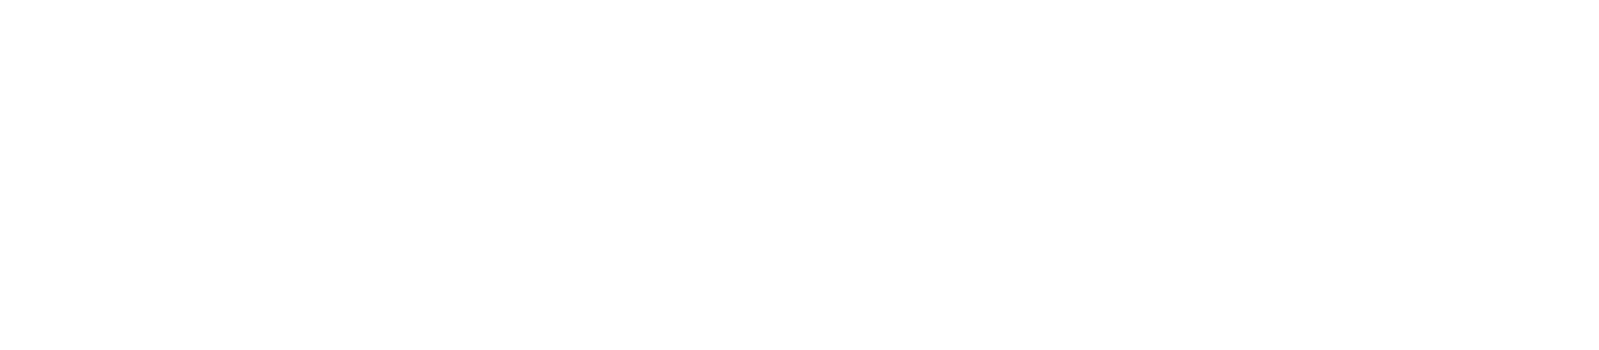 Pure Health Holding logo grand pour les fonds sombres (PNG transparent)